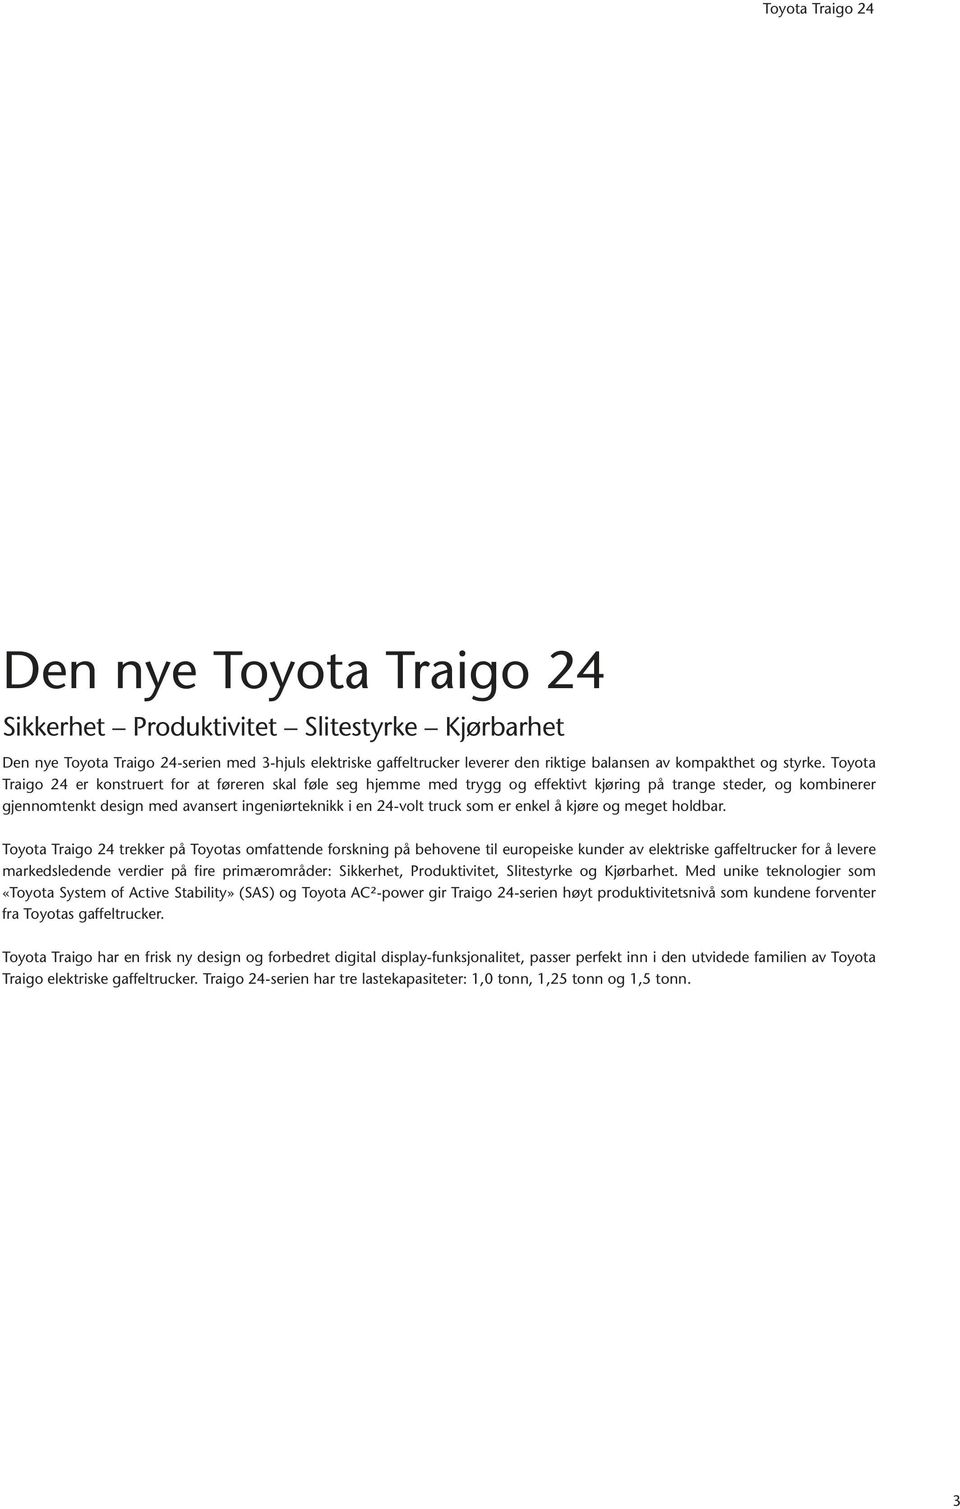 Toyota Traigo 24 er konstruert for at føreren skal føle seg hjemme med trygg og effektivt kjøring på trange steder, og kombinerer gjennomtenkt design med avansert ingeniørteknikk i en 24-volt truck